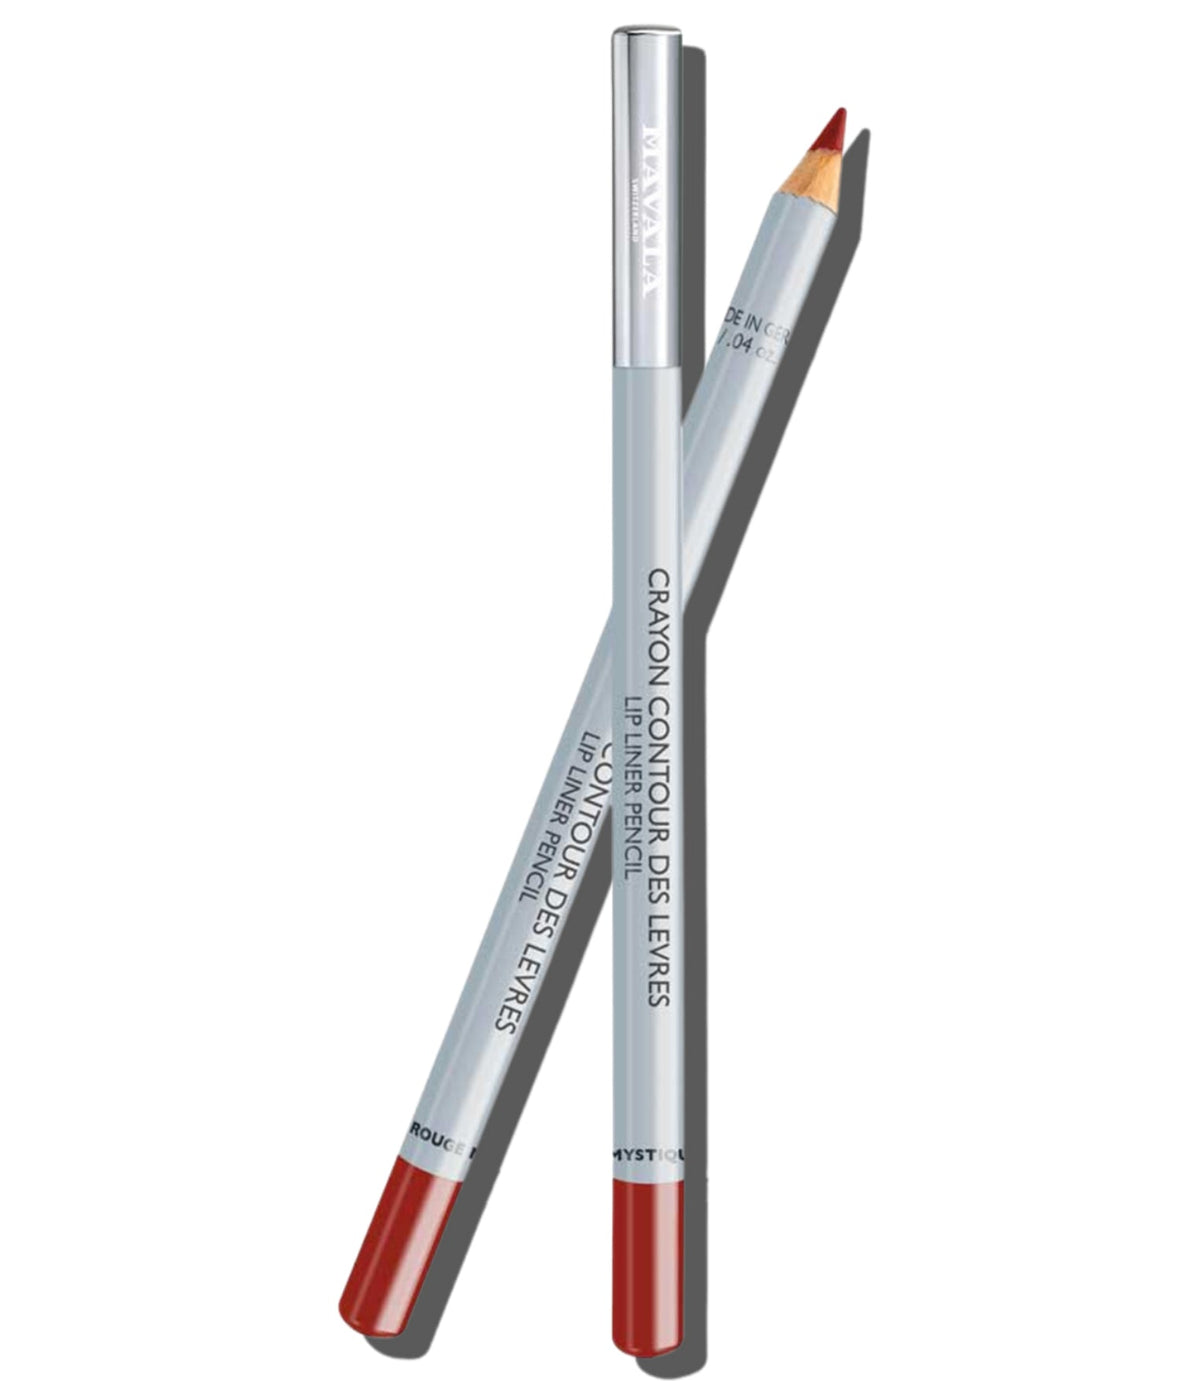 Lip Liner Pencil - Mystic Red 1.4g